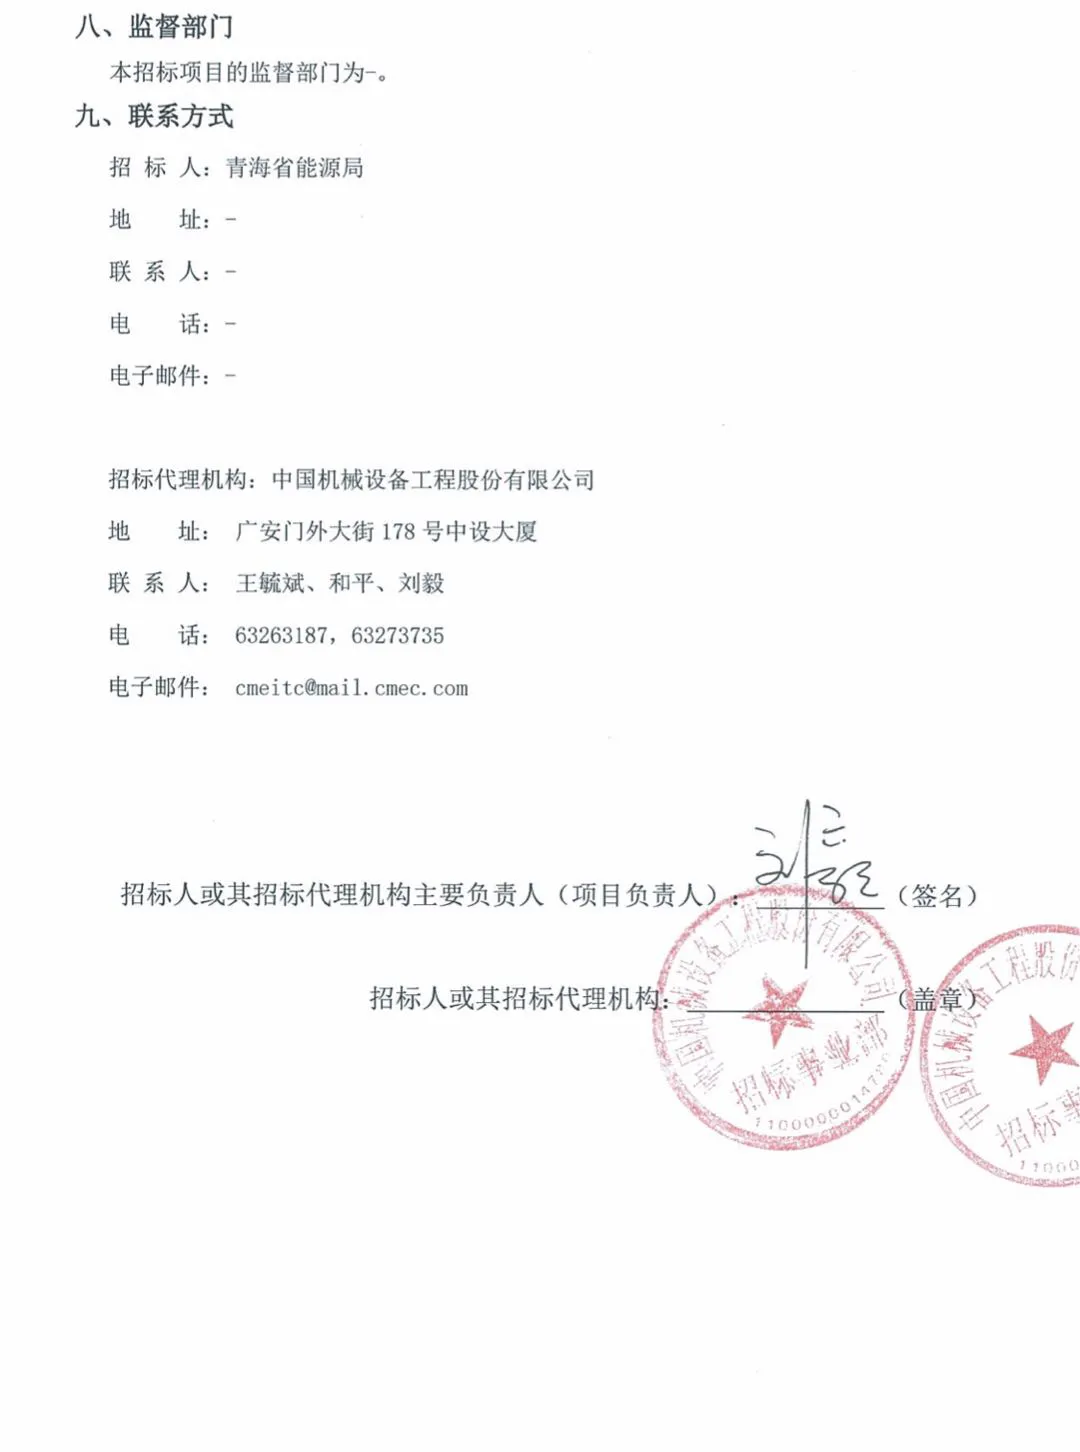 2GW！青海发布2020年光伏竞价项目招标公告 (图5)